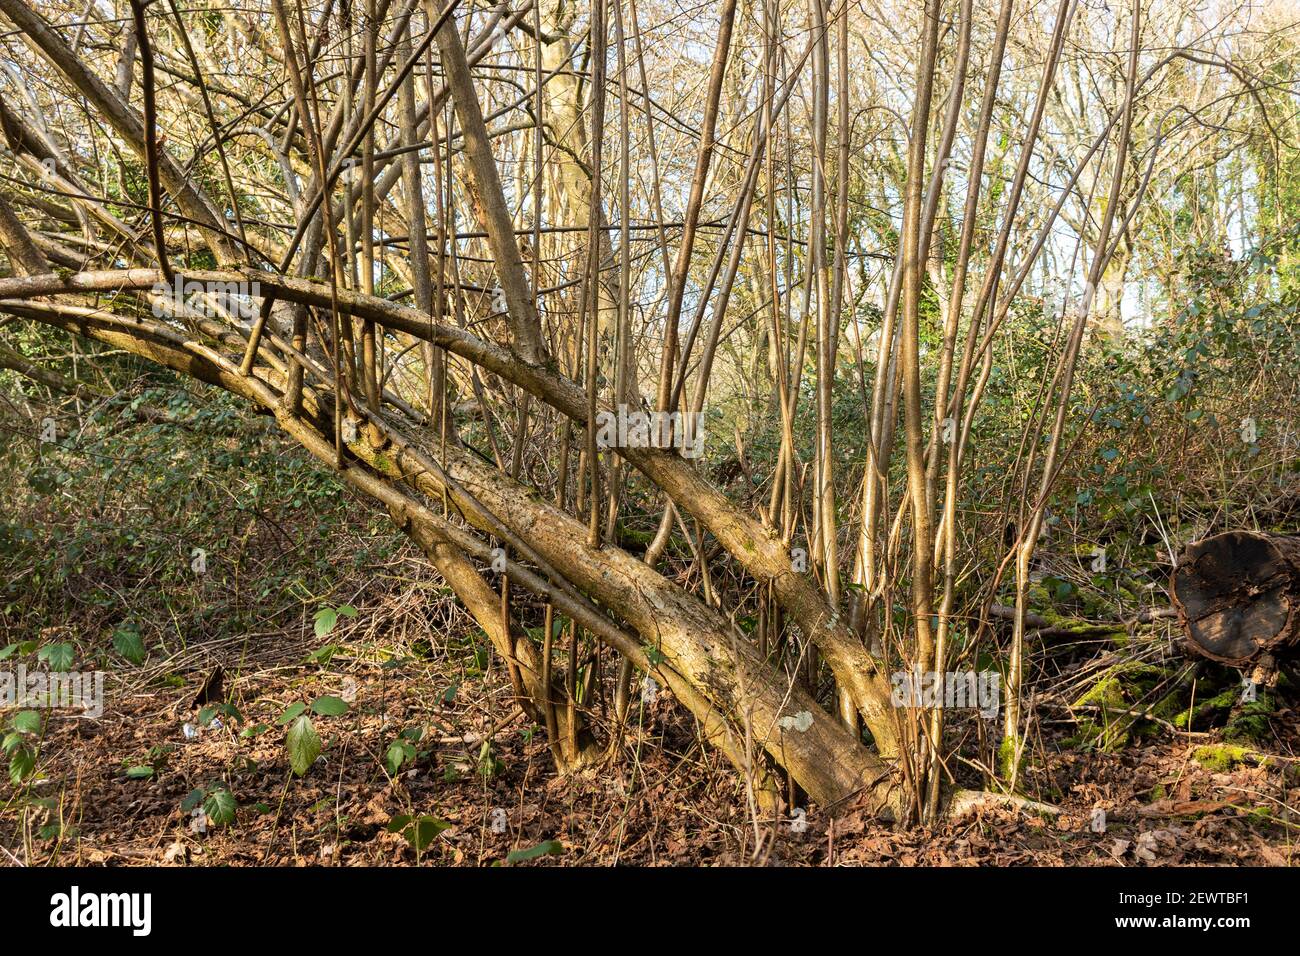 Hazels copiqués (Corylus avellana) dans les bois anglais. Plusieurs années après une pruneau dure, de longues tiges droites prêtes pour la coupe ont grandi, Royaume-Uni Banque D'Images